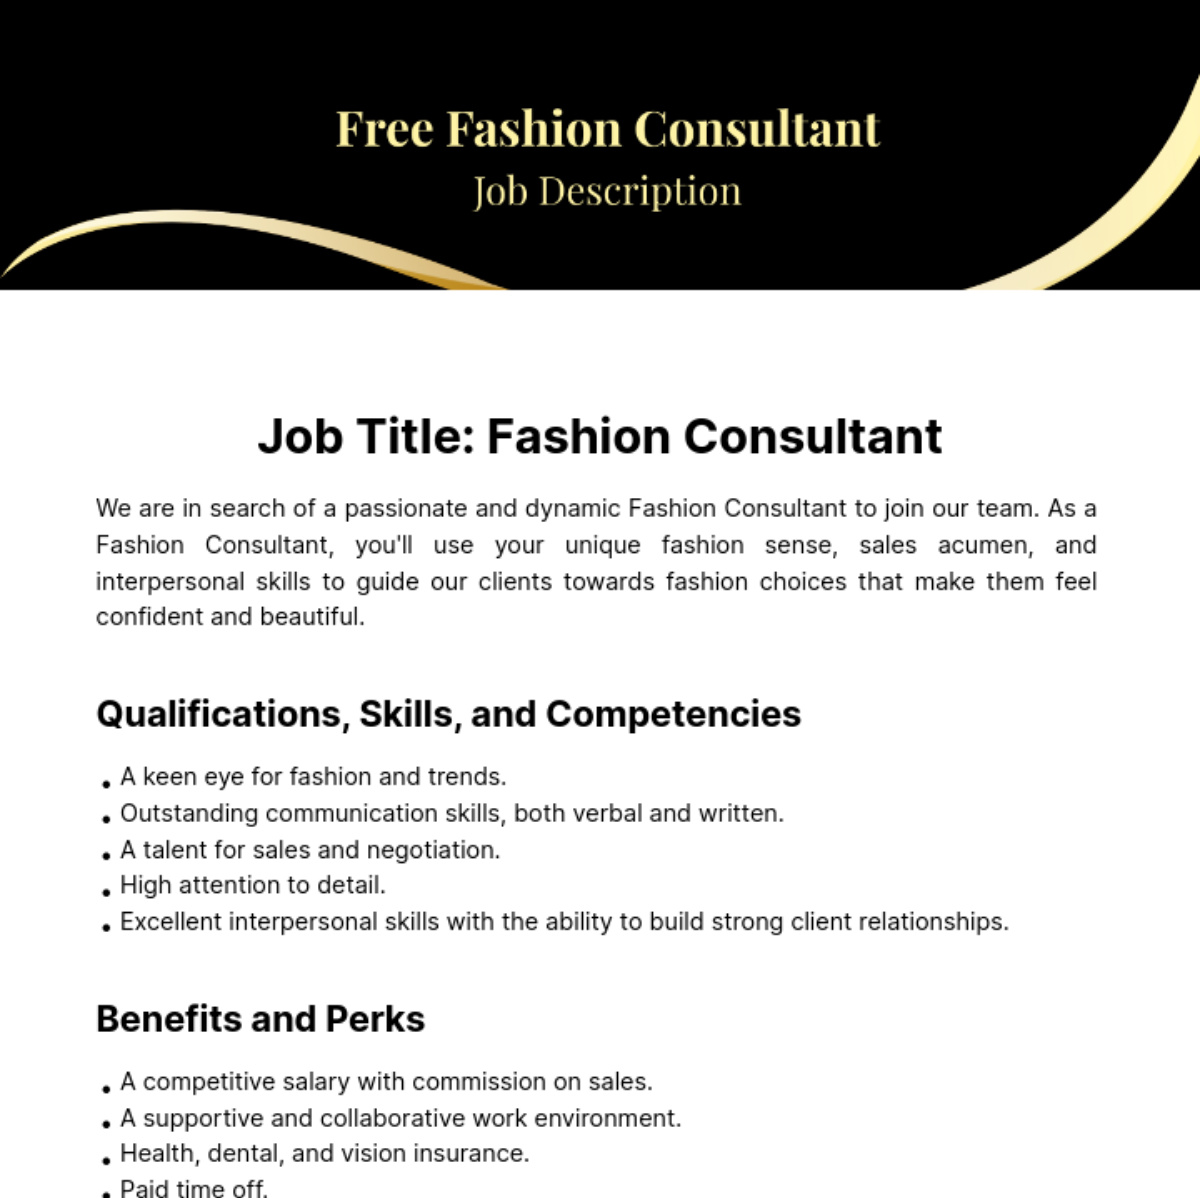 Free Fashion Consultant Job Description Template